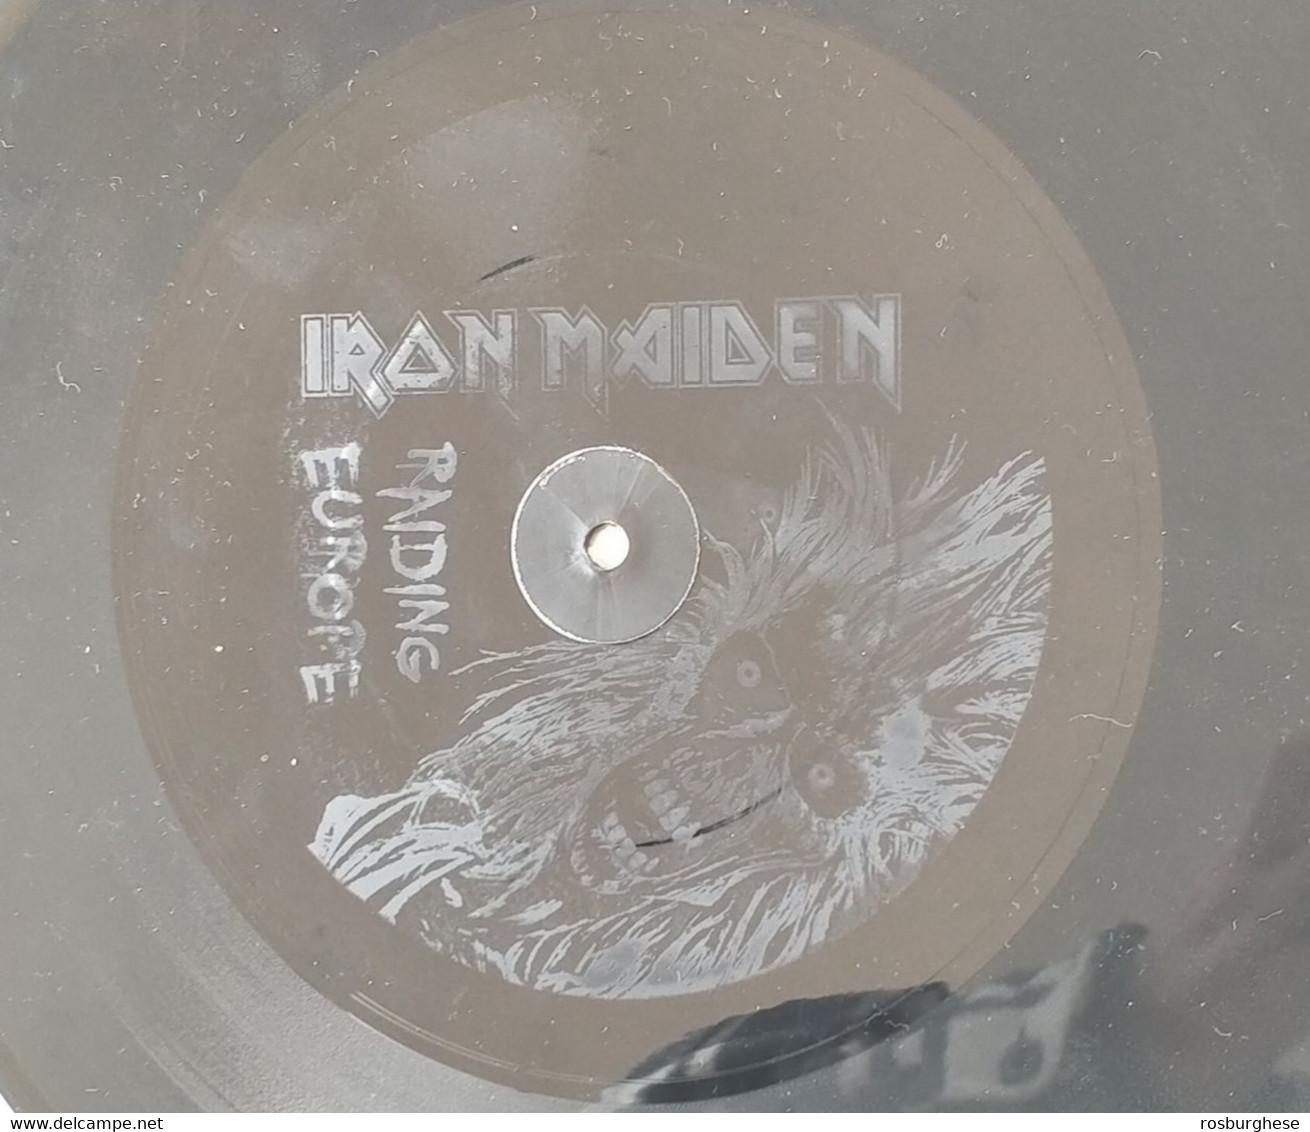 Iron Maiden Raiding Europe VINILE LP Etched 300 Copie - Limitierte Auflagen